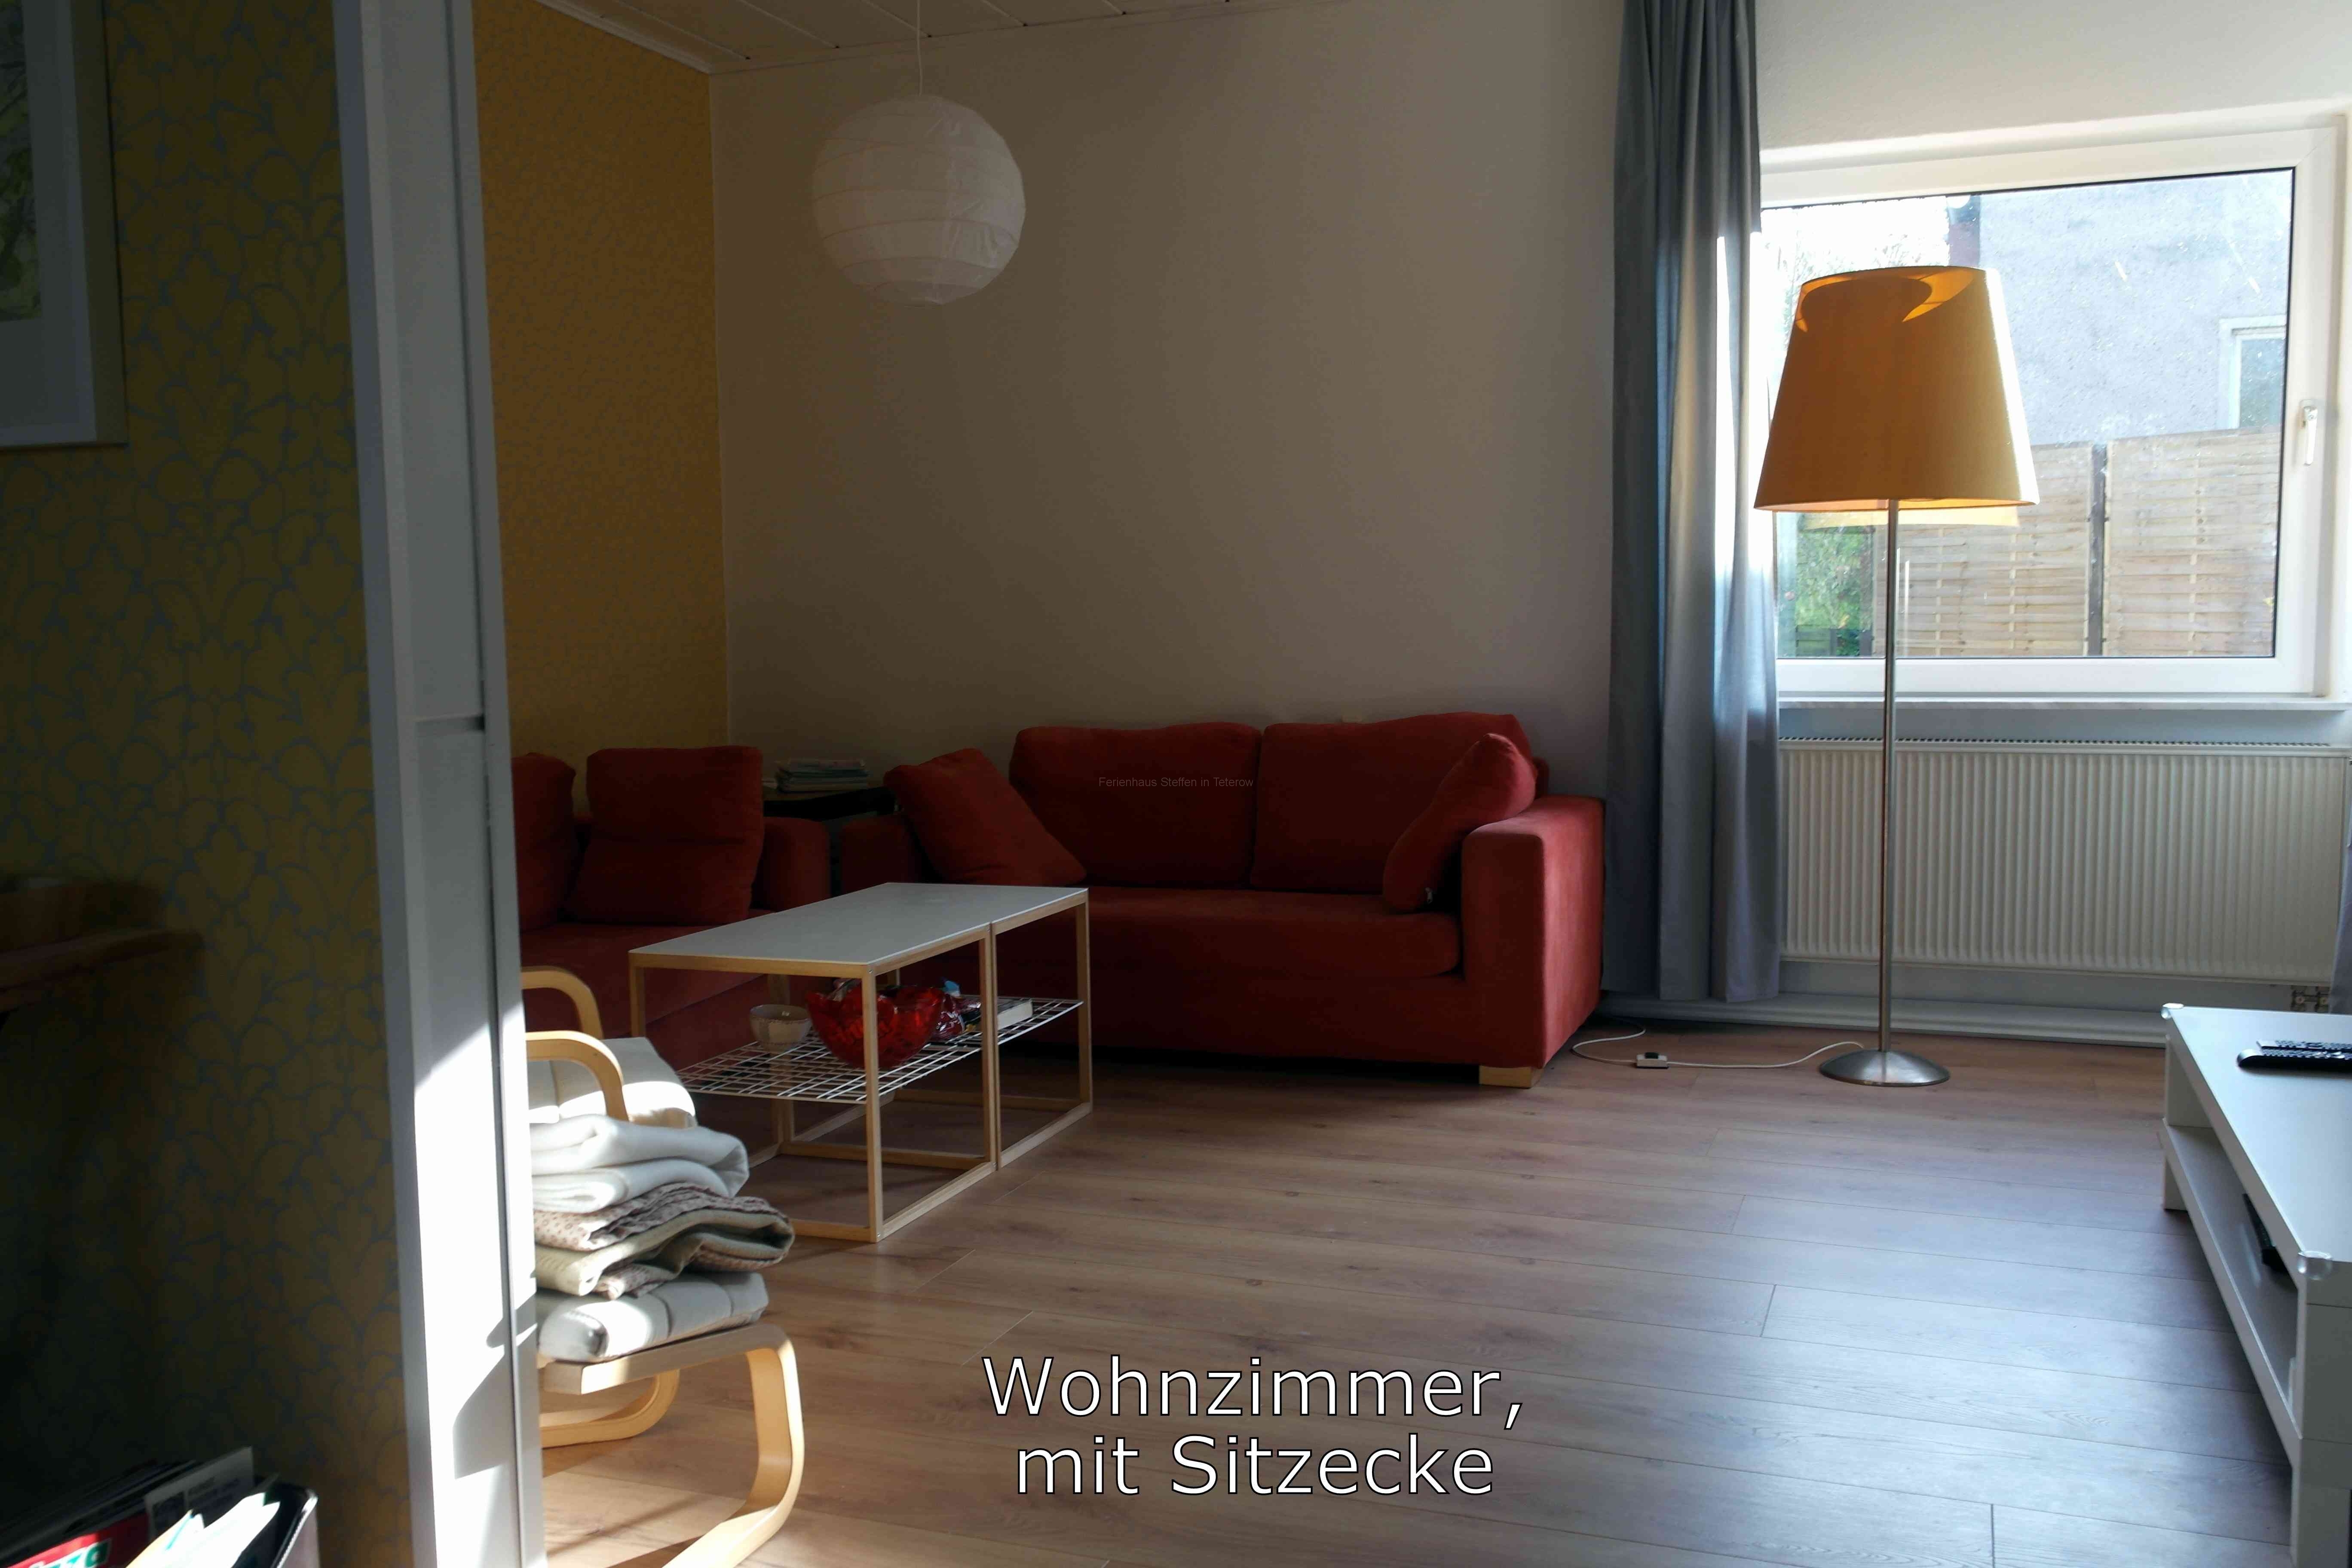 Wohnzimmer mit Sitzecke - Ferienhaus Steffen in Teterow.jpg